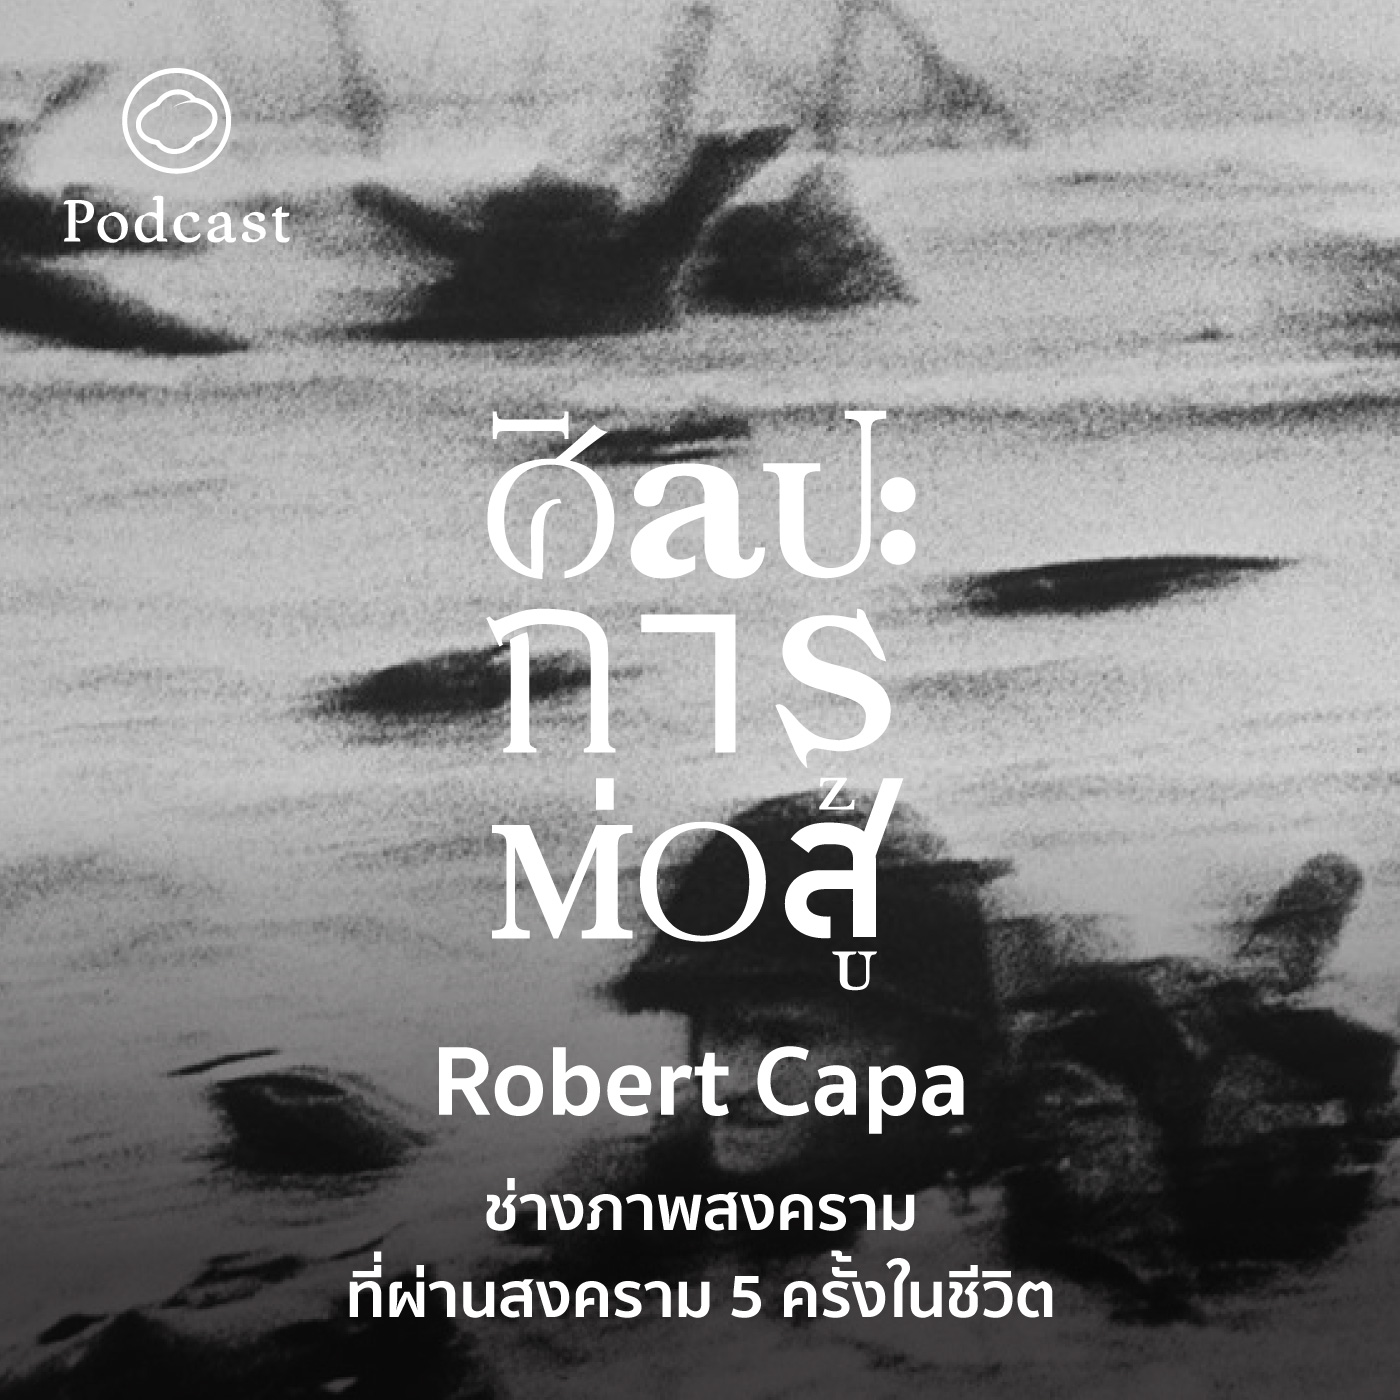 EP. 59 Robert Capa ช่างภาพสงครามที่ผ่านสงคราม 5 ครั้งในชีวิต - The Cloud Podcast